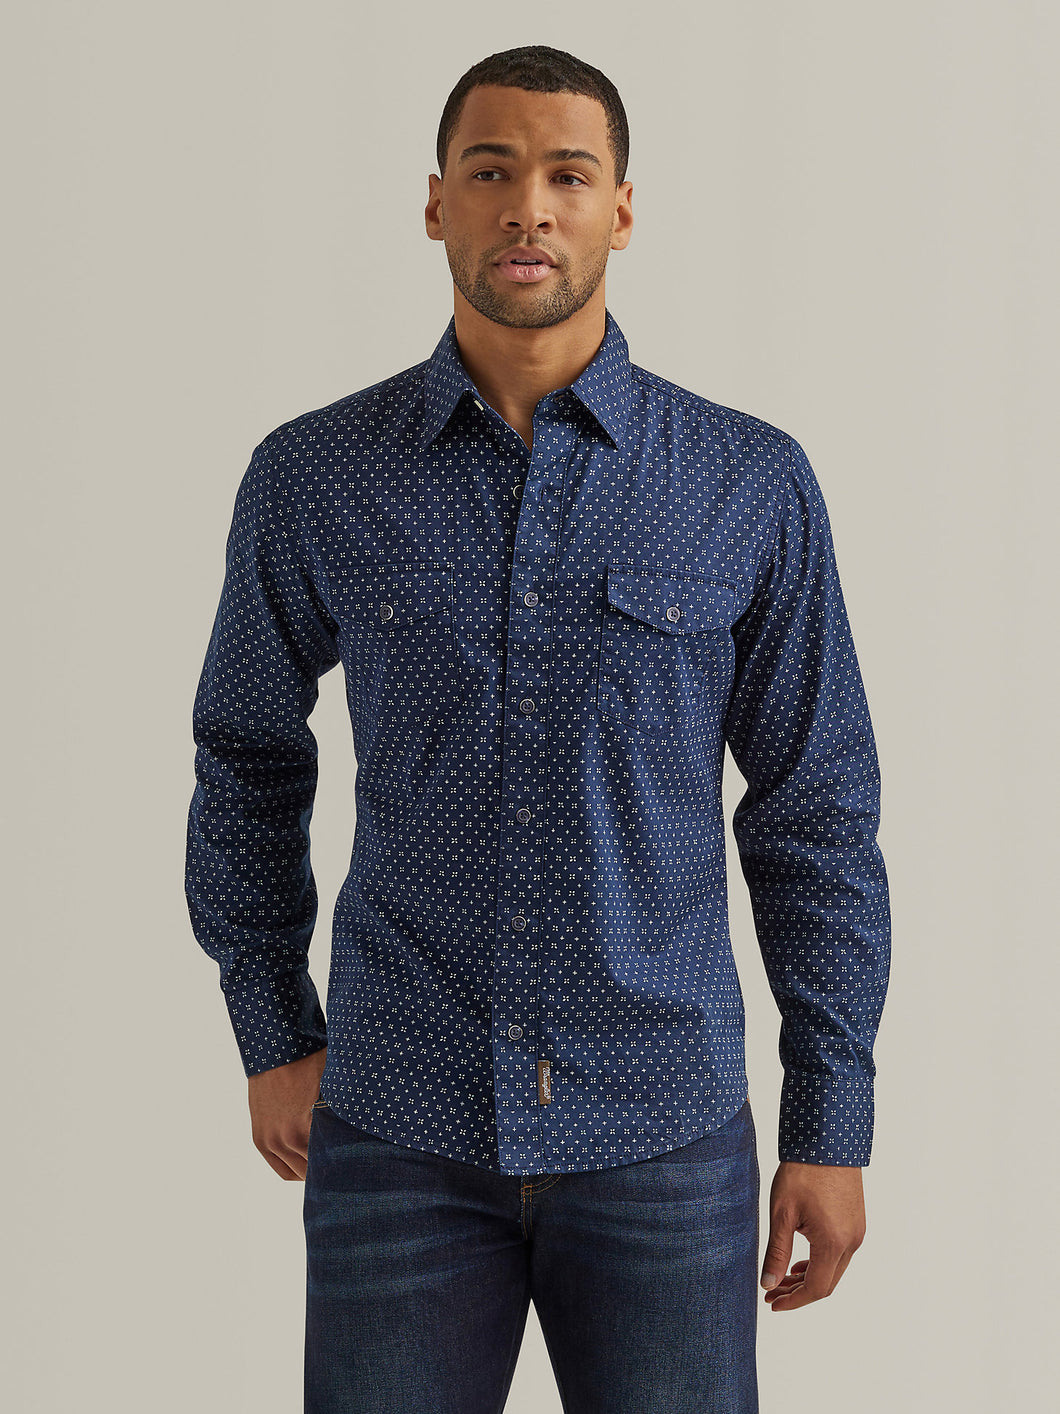 Men's Wrangler Retro Premium Long Sleeve Shirt 30771